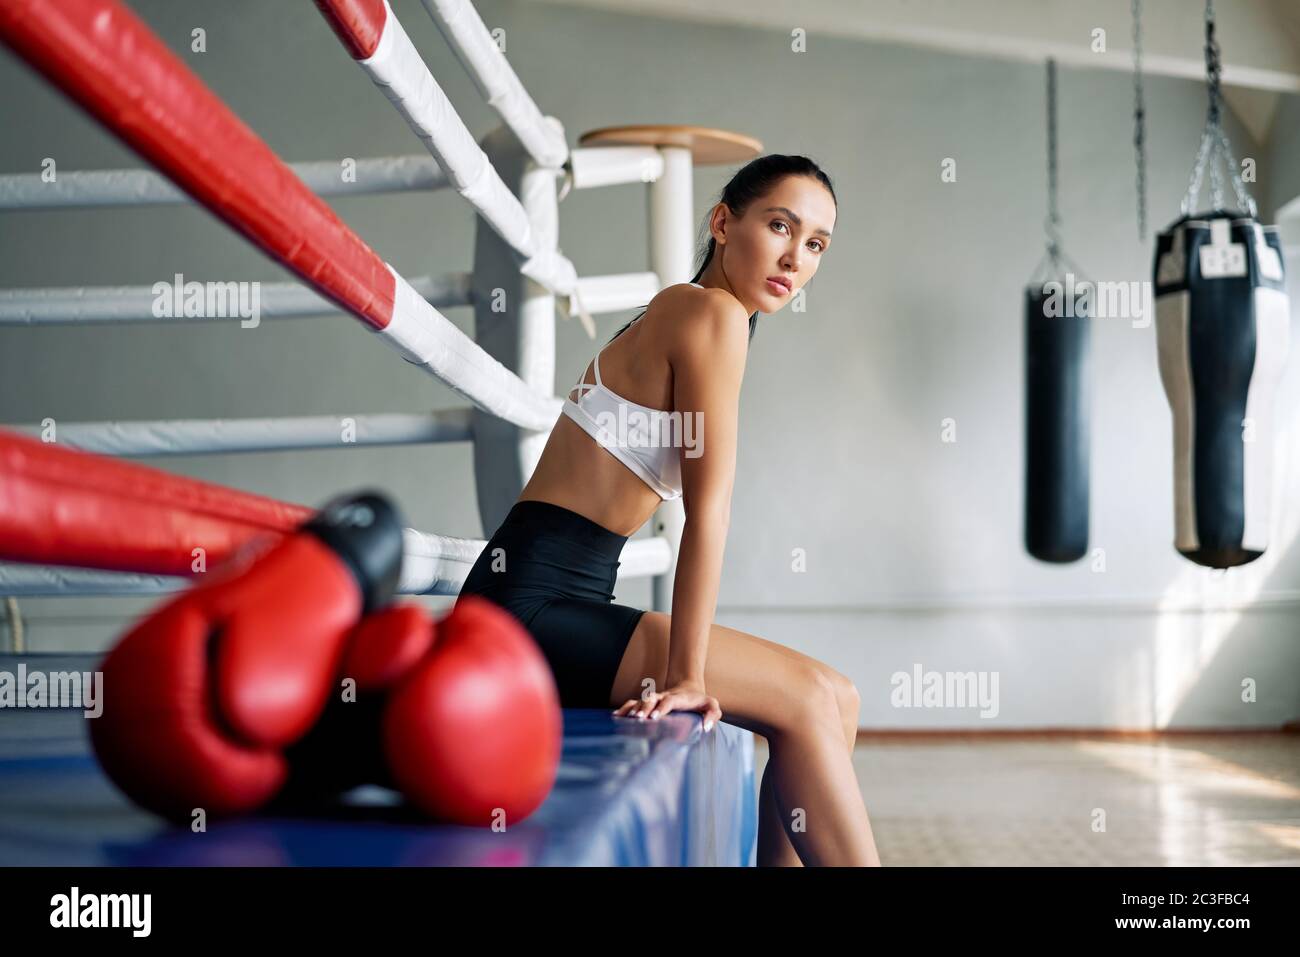 Jeune belle femme se détendre après la lutte ou l'entraînement s'exerçant dans le ring de boxe Banque D'Images